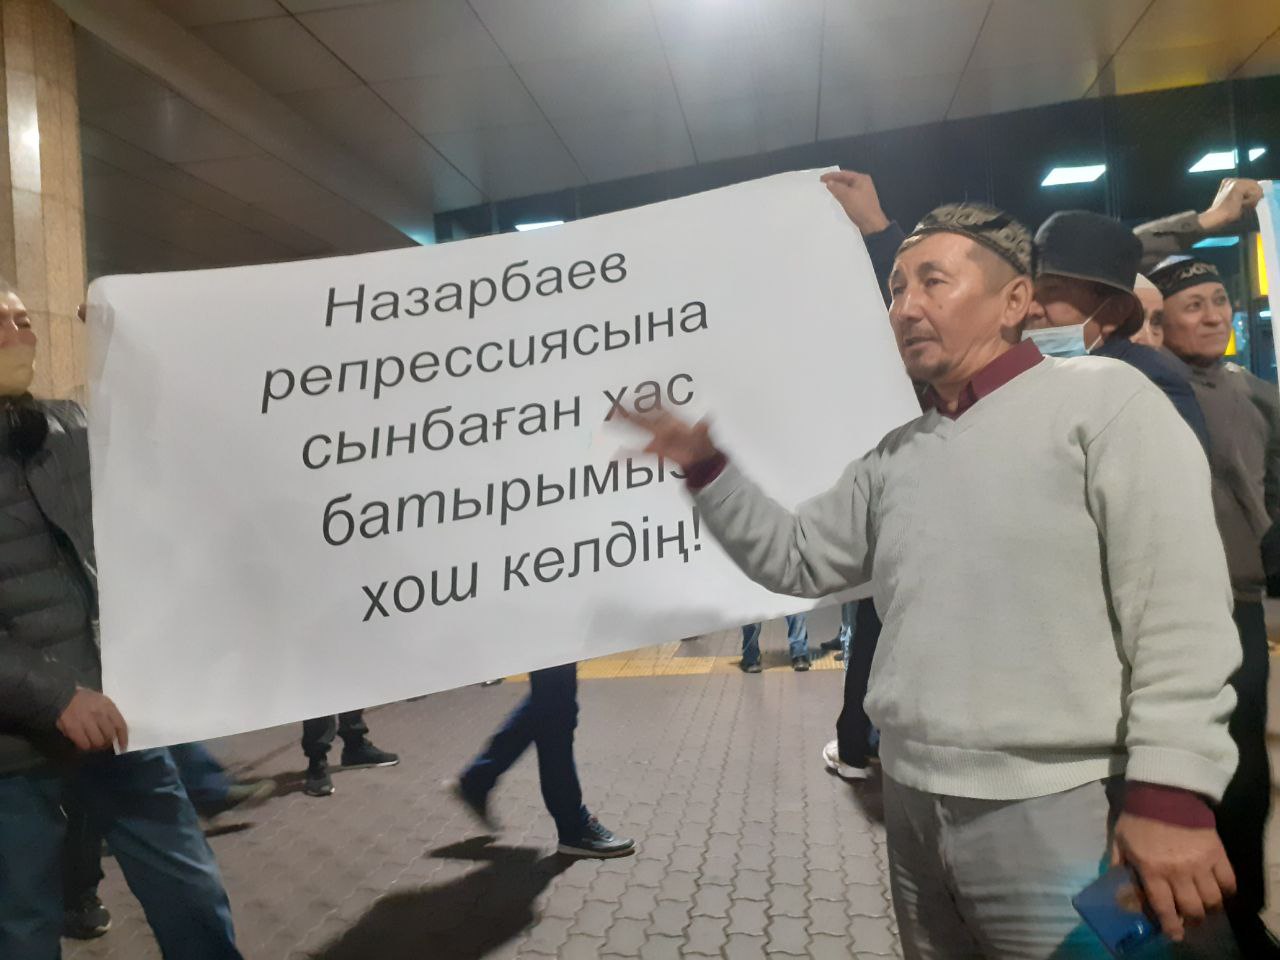 Белсенділердің бірі «Назарбаев режиміне сынбаған хас батырымыз, қош келдің» деген жазуы бар плакаттың қасында азаматтық-жеке көзқарасын білдіріп тұр. Фото: QT